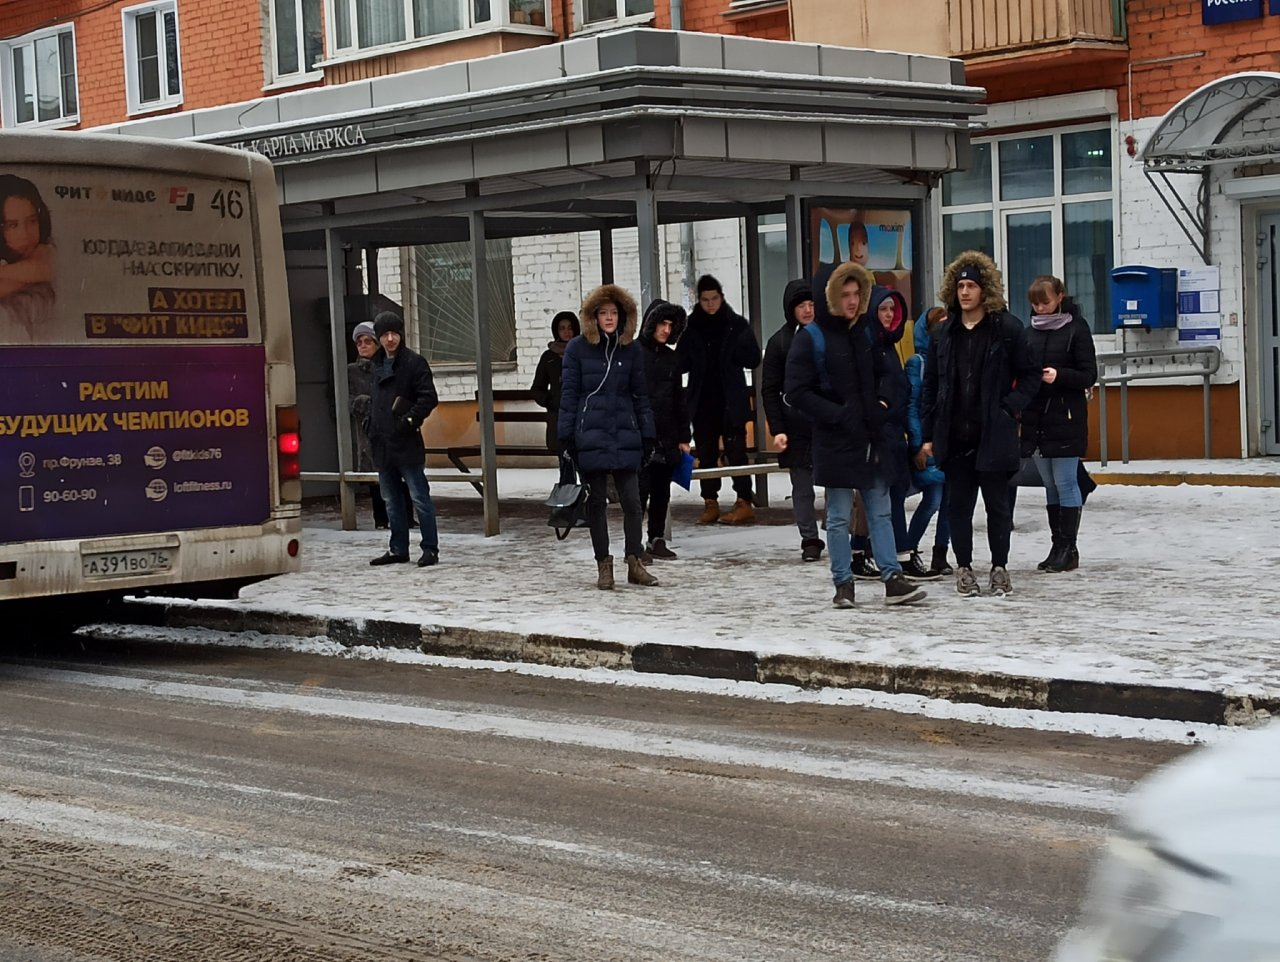 "Заставили платить наличными": ярославцы высмеяли "подарок" властей студентам